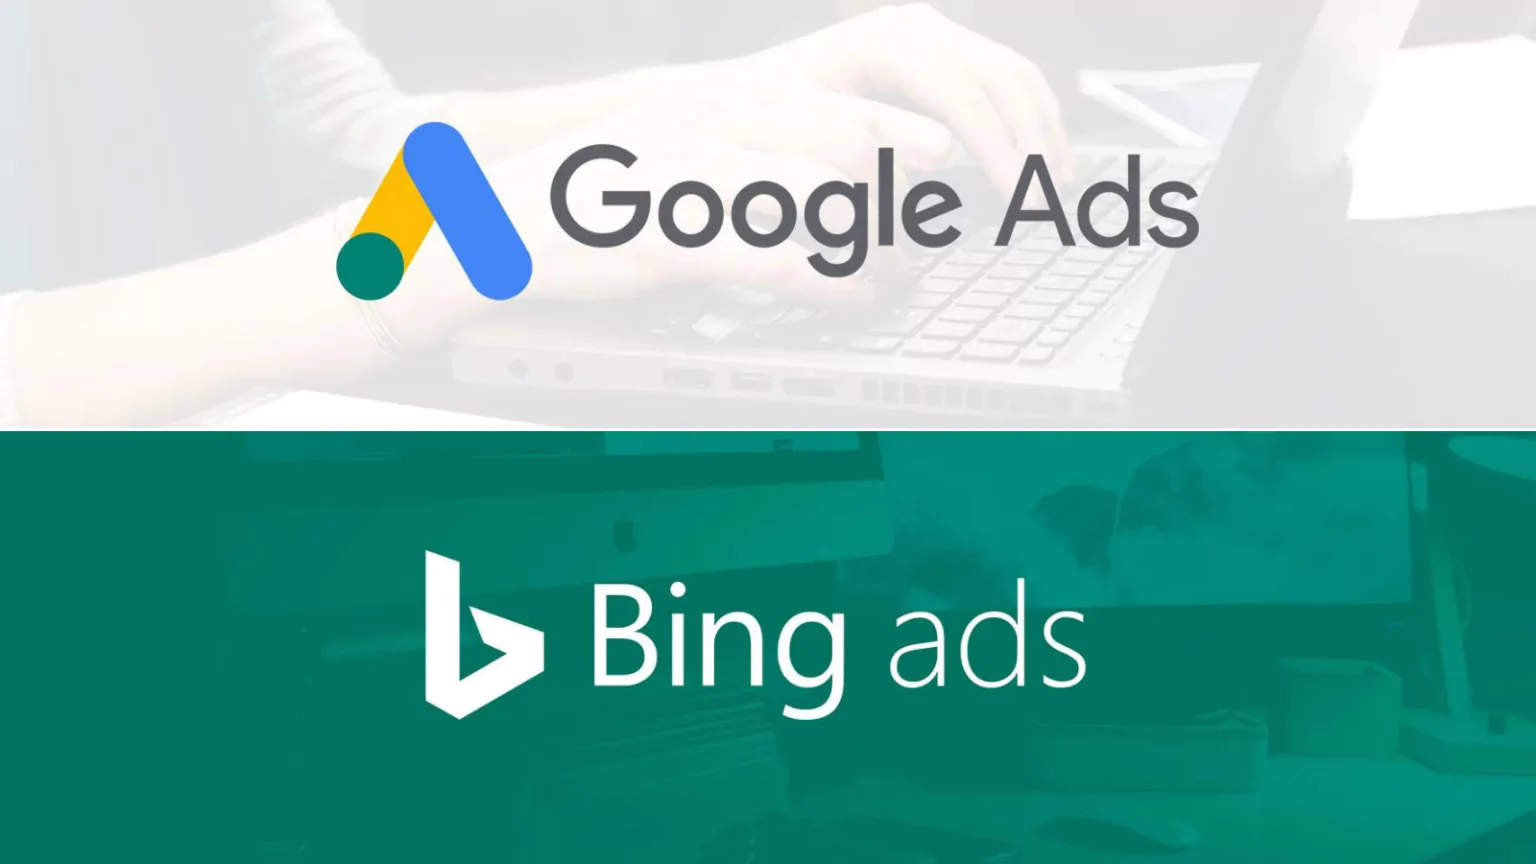 binge-ads-vs-google-ads